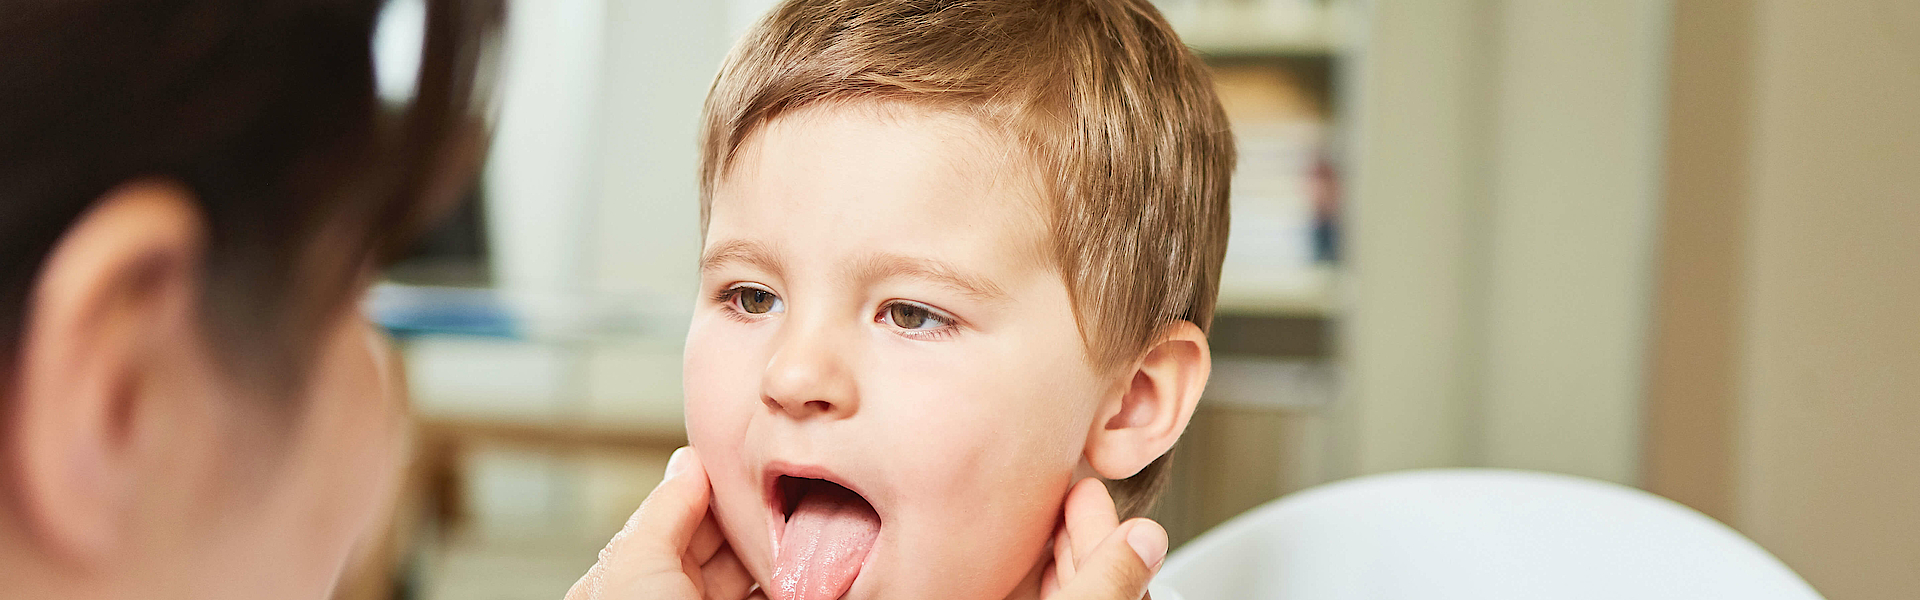 Ein Kinderarzt untersucht einen kleinen Jungen. Der Junge streckt die Zunge heraus. Der Arzt tastet den Hals ab.